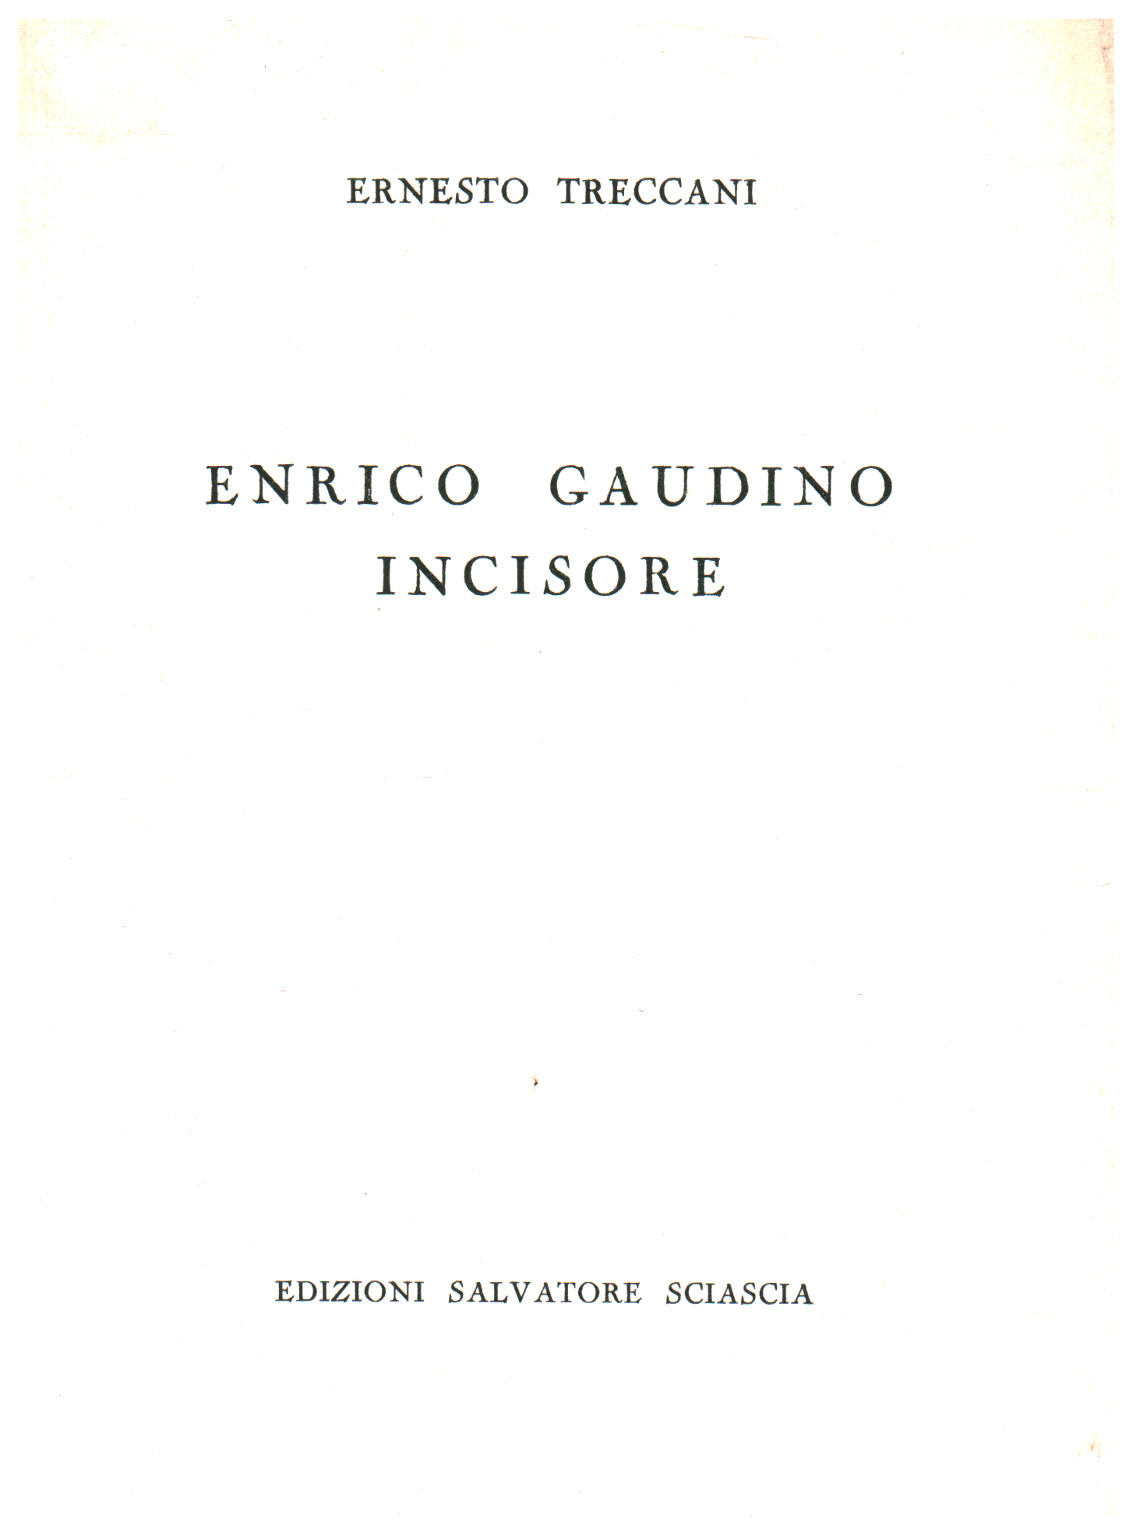 Enrico Gaudino, grabador, s.una.